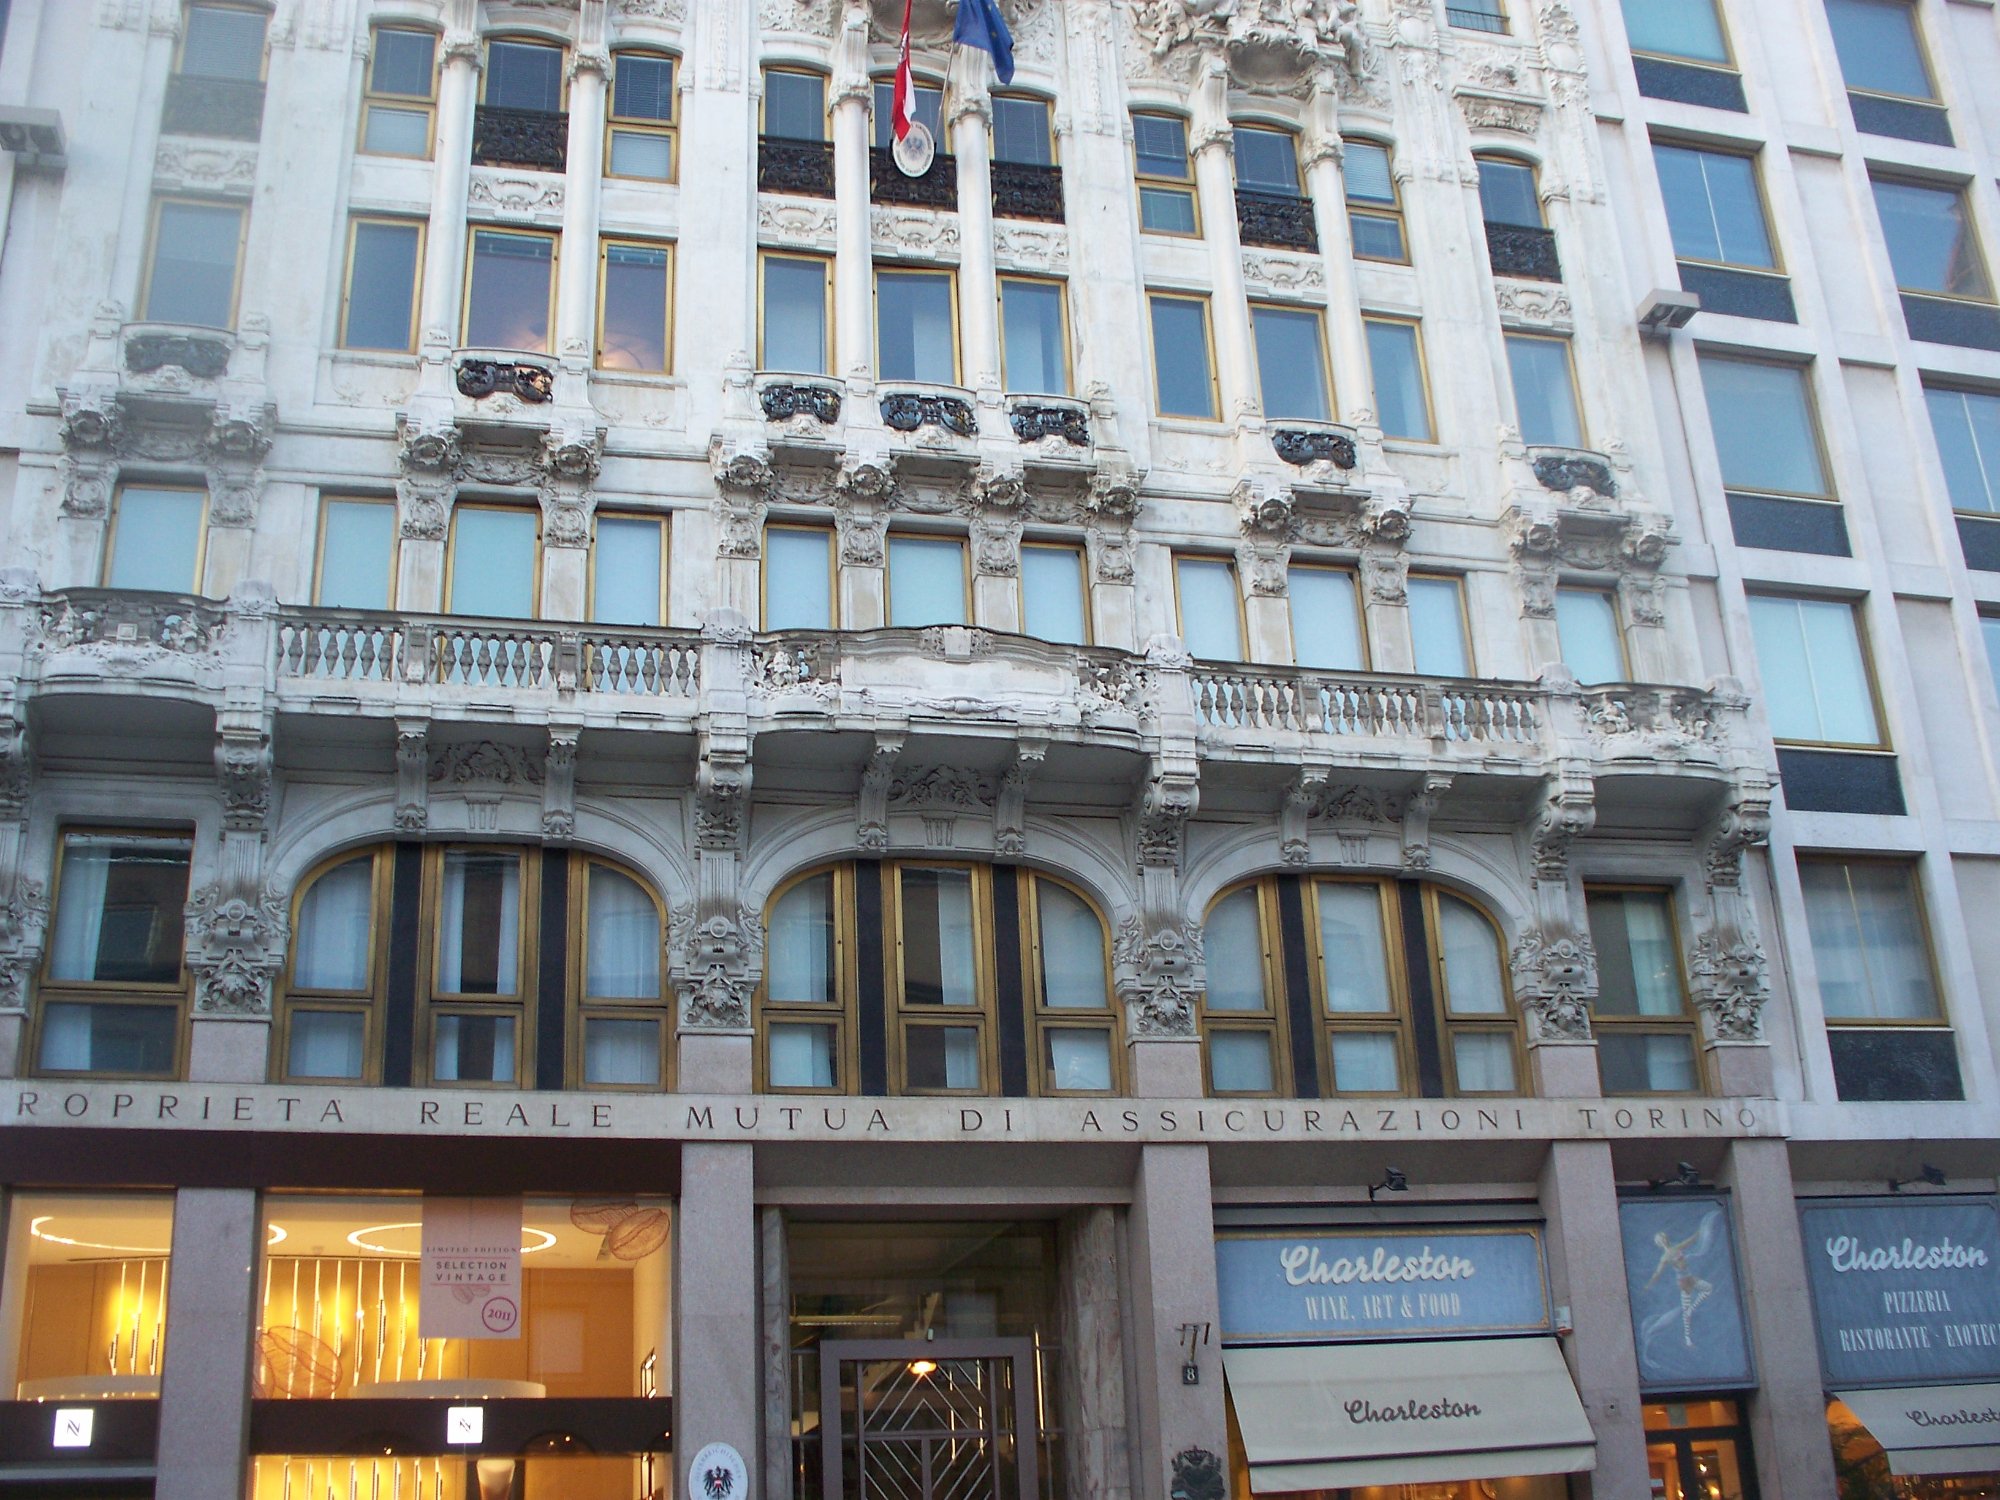 Palazzo della Società Reale Mutua di Assicurazioni